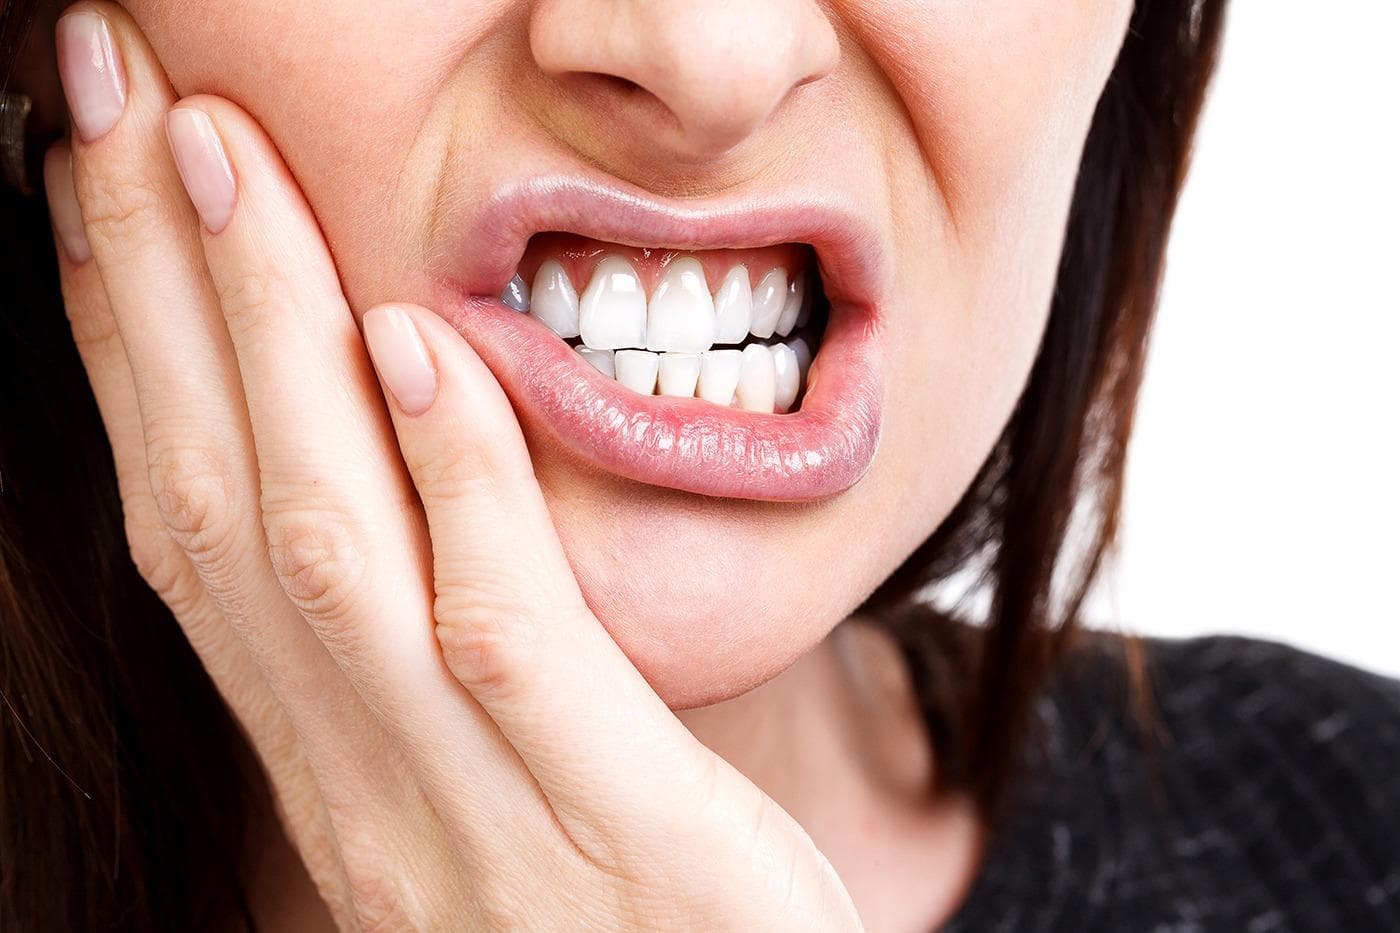 دهانی کج به دلیل بیماری درد دندان و دستی گذاشت بر روی گونه